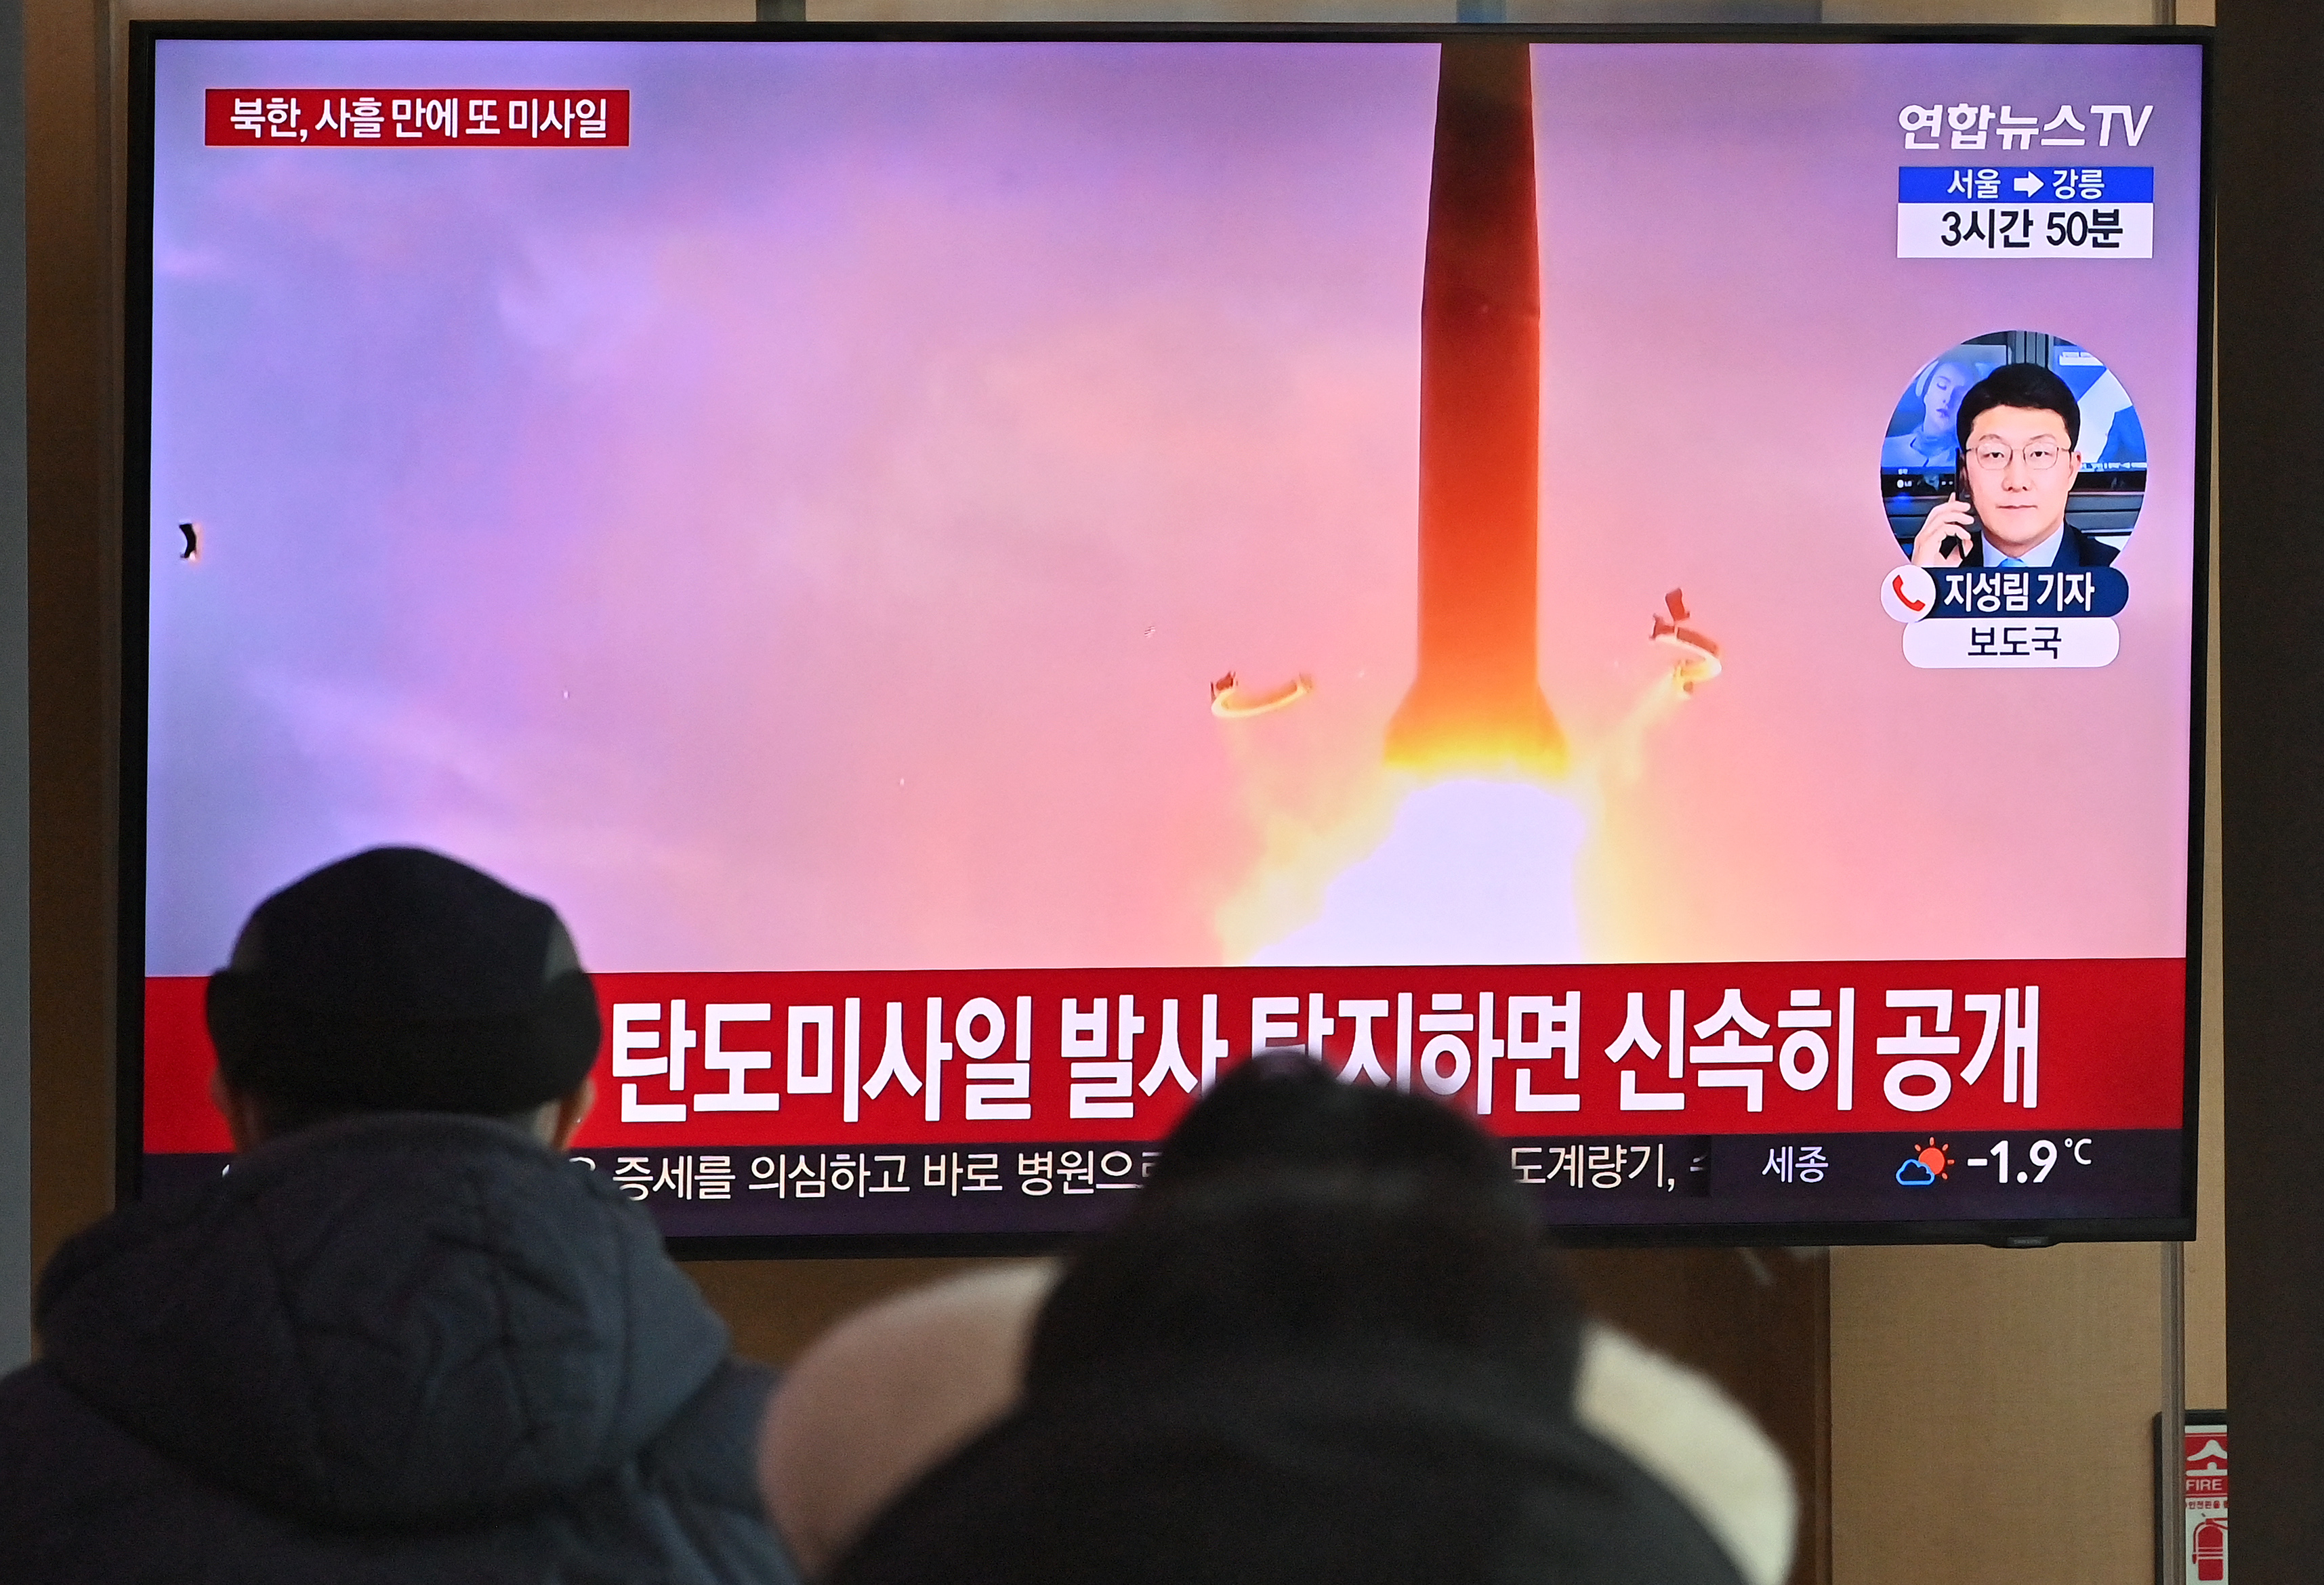 Észak-Korea újabb rakétakísérletet hajtott végre